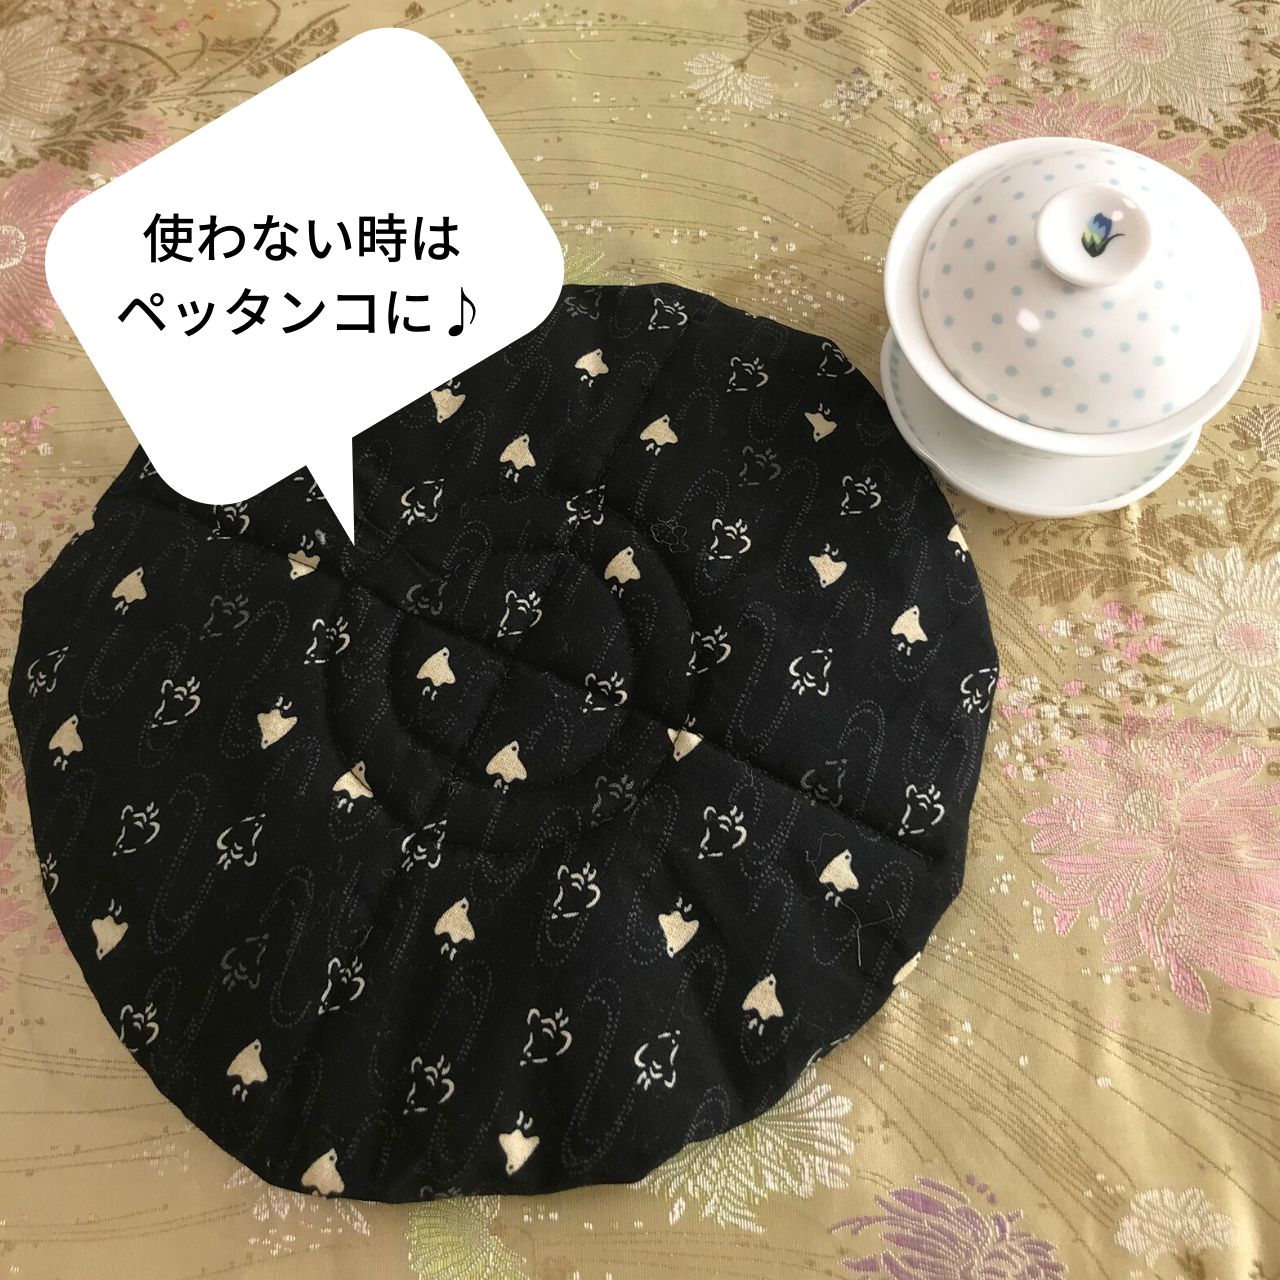 茶器を収納して持ち運べる便利な巾着ポーチを作りました♪ | 華泉-Hanaizumi-